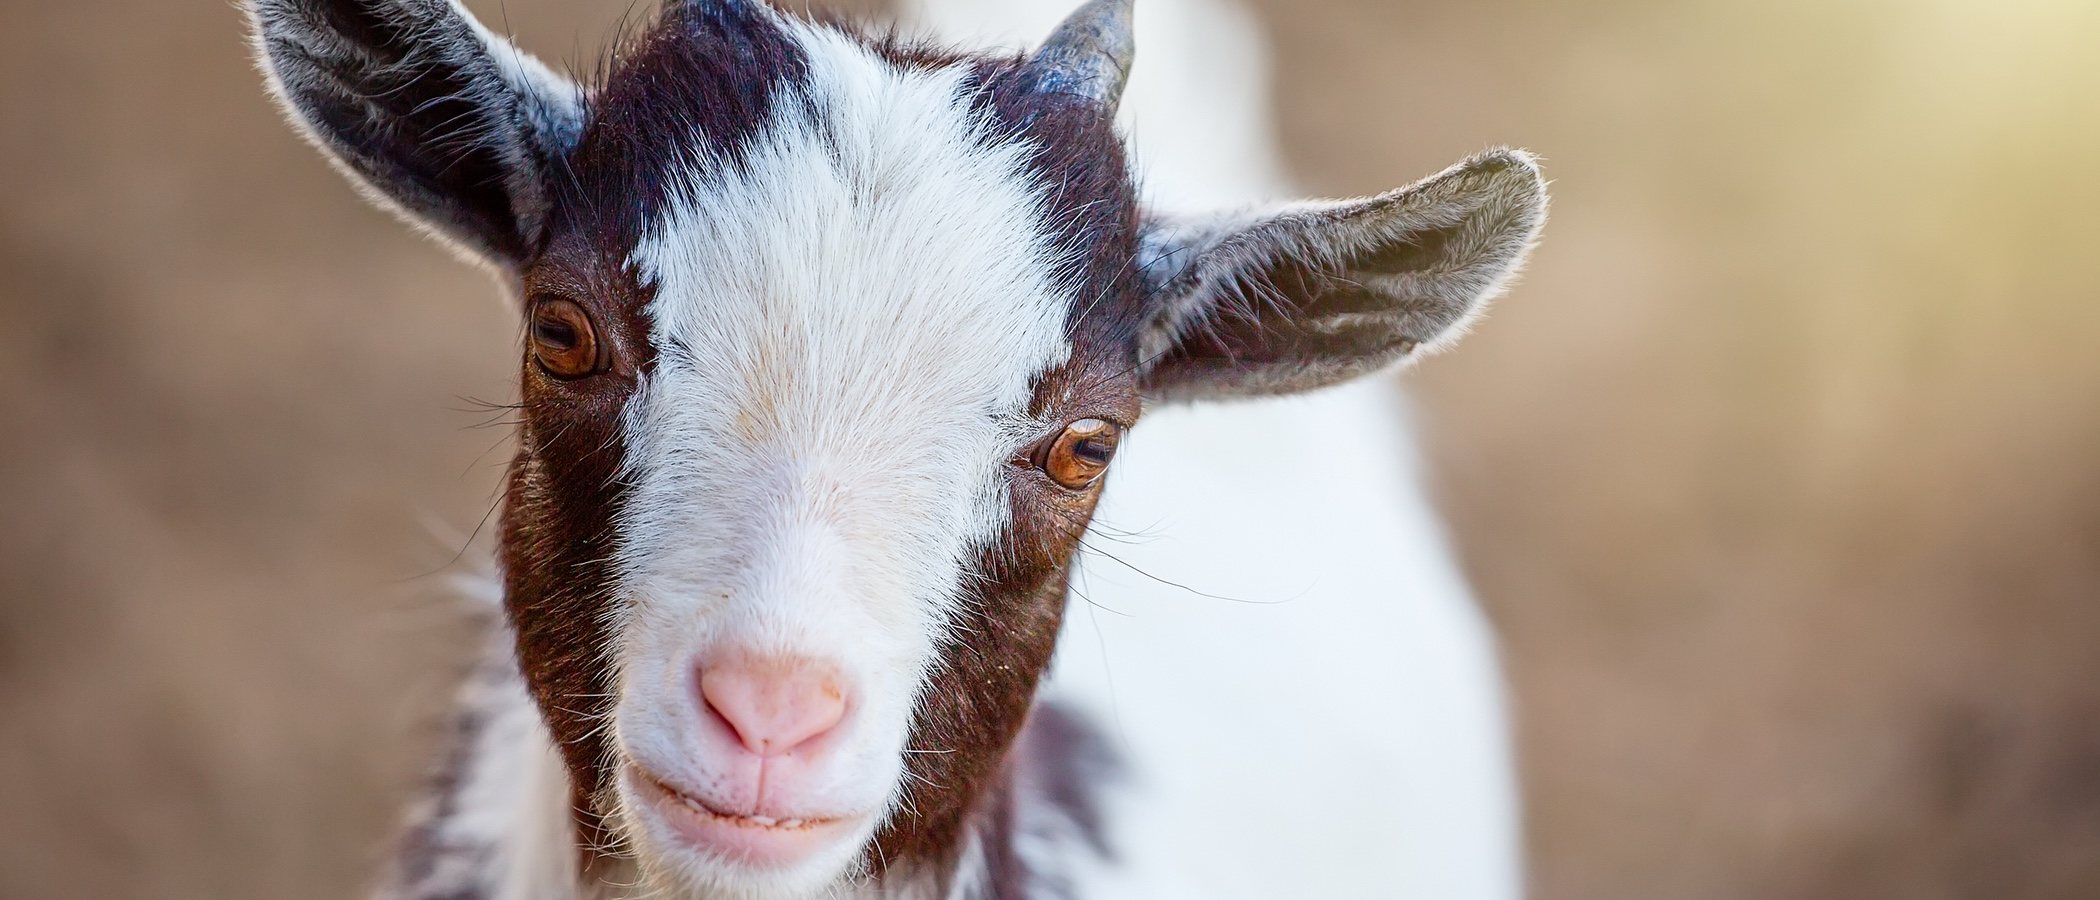 La cabra enana: un animal adorable que se puede tener como mascota